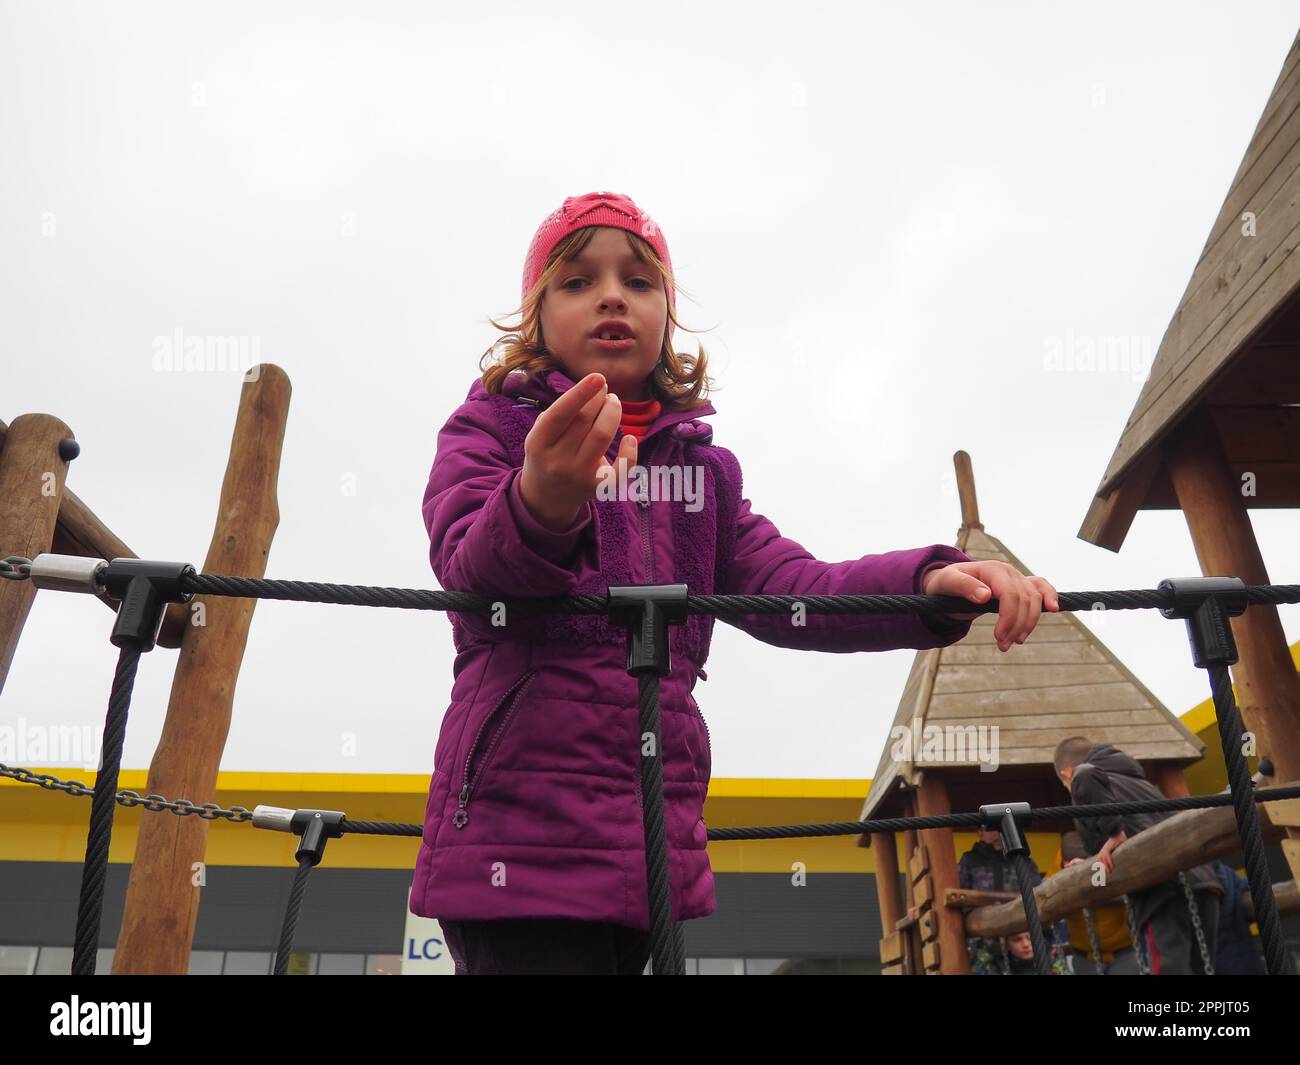 Mädchen 7 Jahre alt auf dem Spielplatz. Das Kind trägt warme Kleidung für die Halbzeit - eine lila Jacke und eine pinkfarbene Mütze. Kletterspielplatz für Kinder. Das Mädchen streckt ihre rechte Hand nach vorne aus Stockfoto